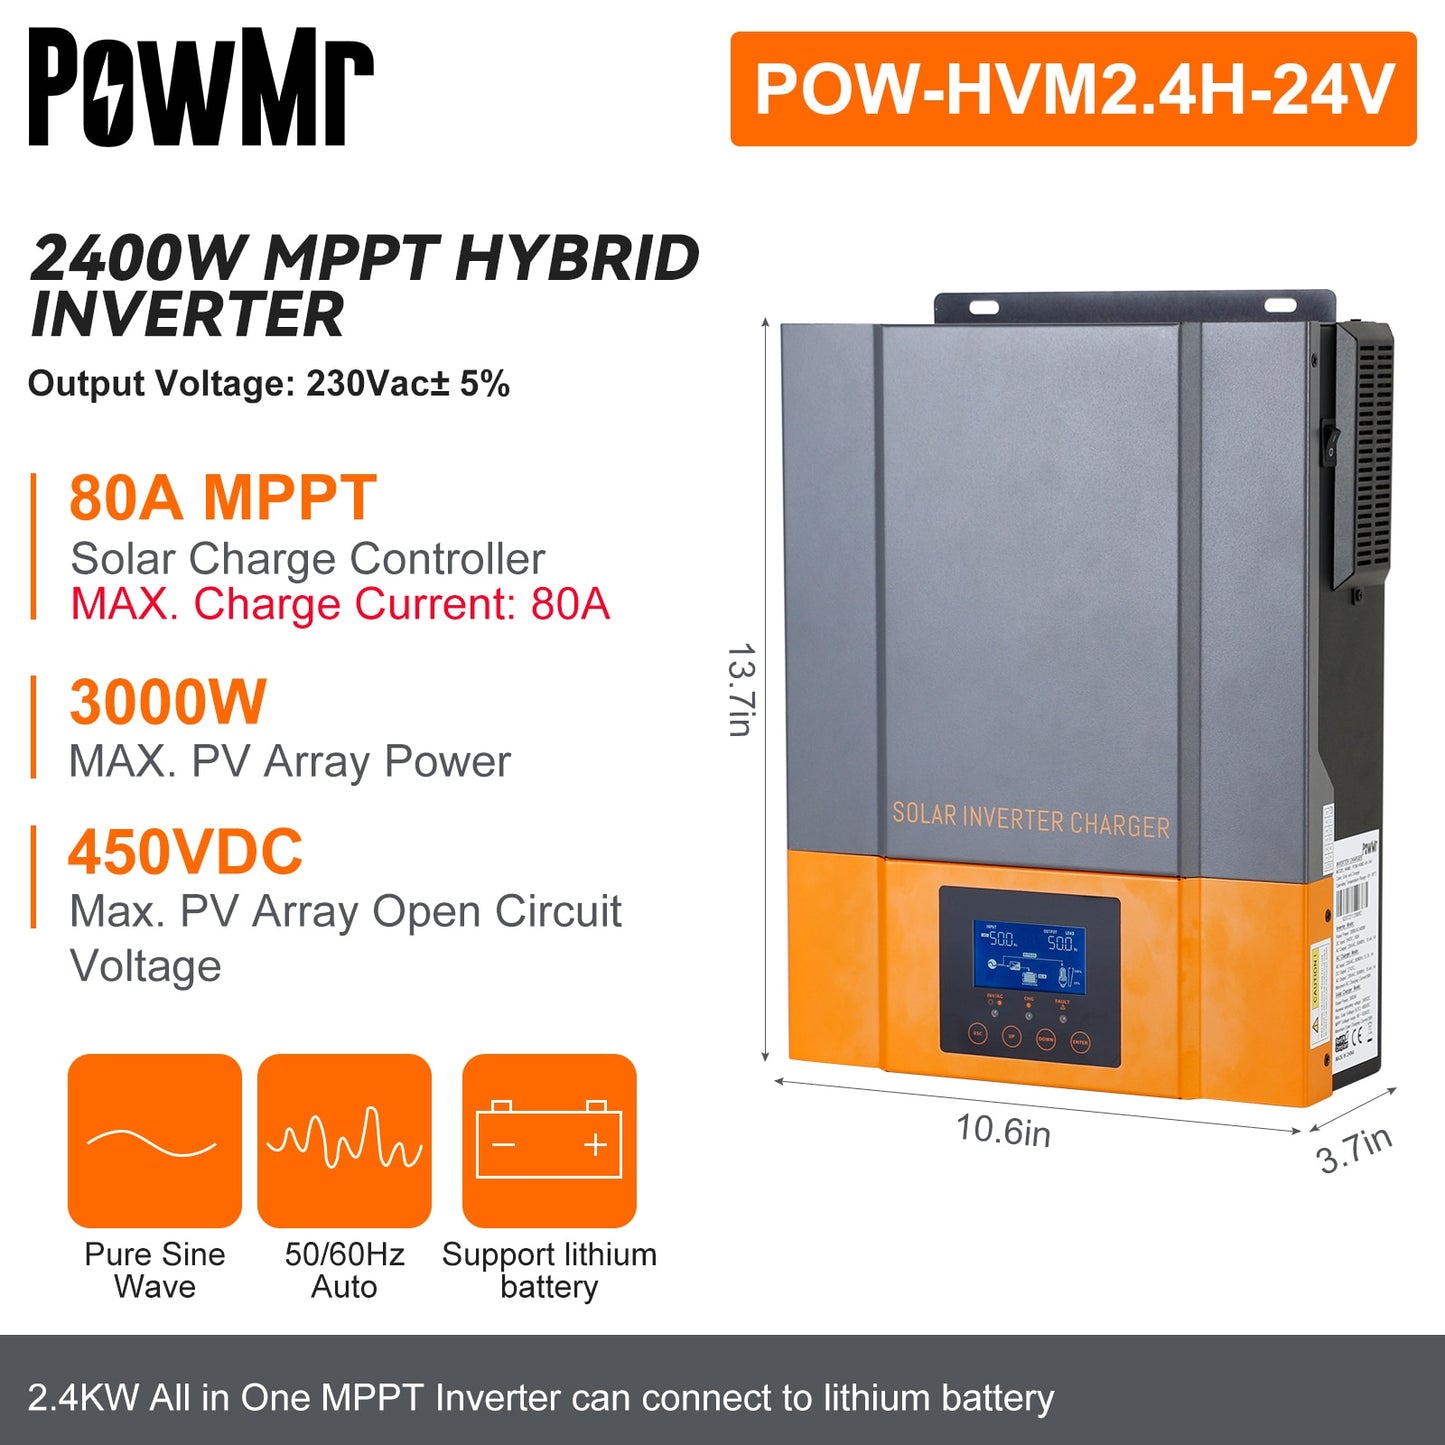 Onduleur solaire hybride PowMr 3.2KW 24V à 230V MPPT 80A Sortie Onduleur hybride photovoltaïque Contrôleur de charge solaire MPPT intégré